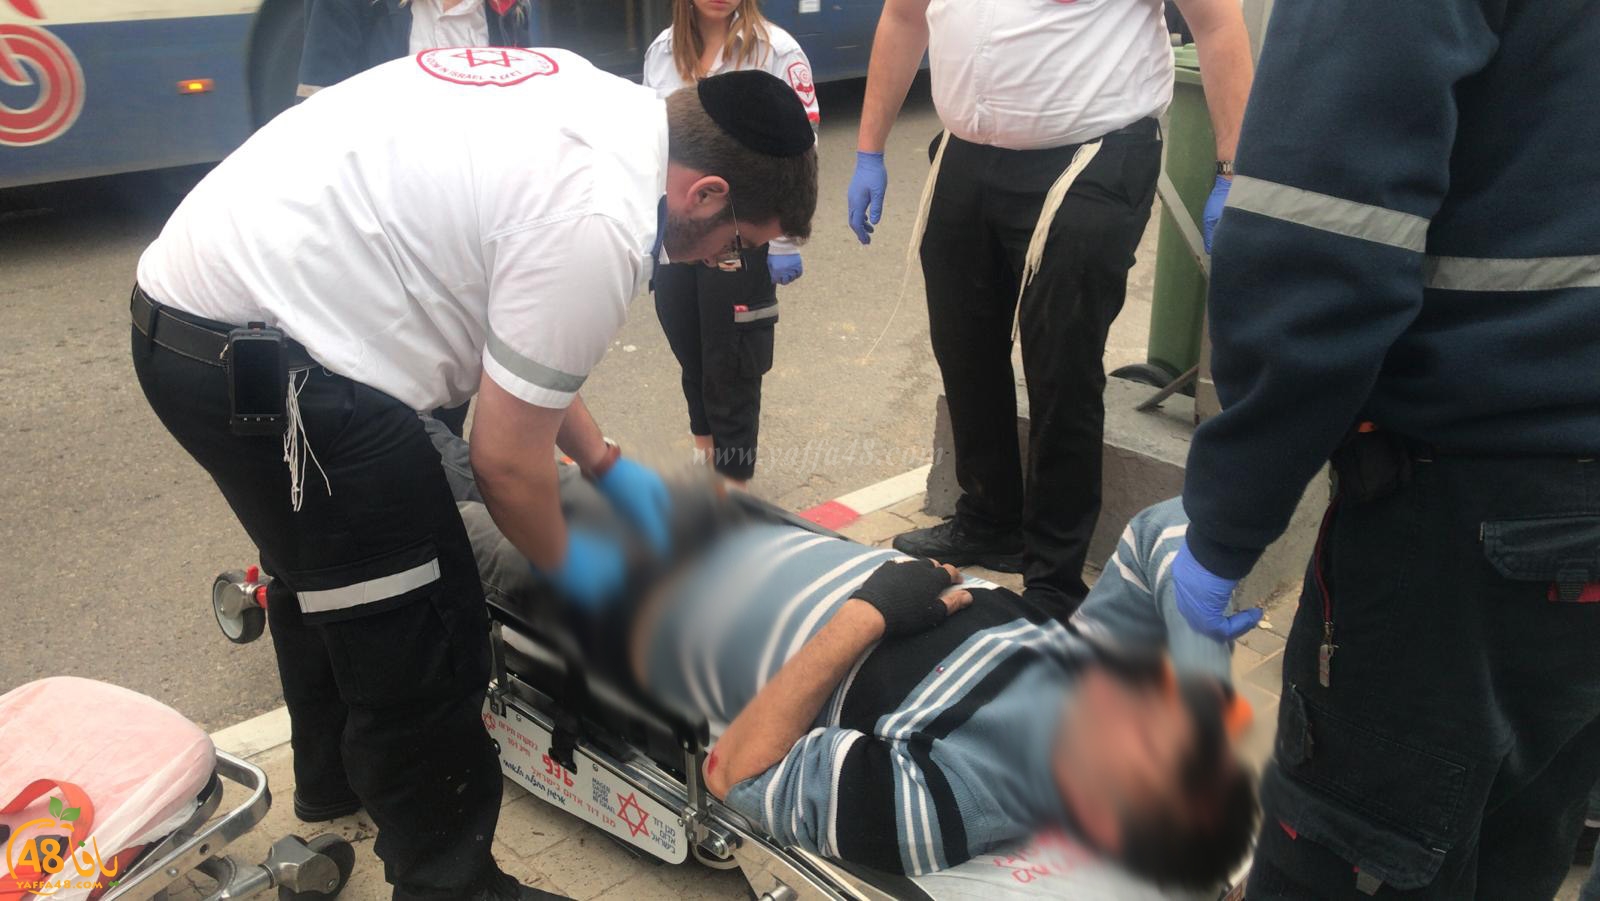  يافا: إصابة طفيفة لراكب دراجة بحادث دهس 